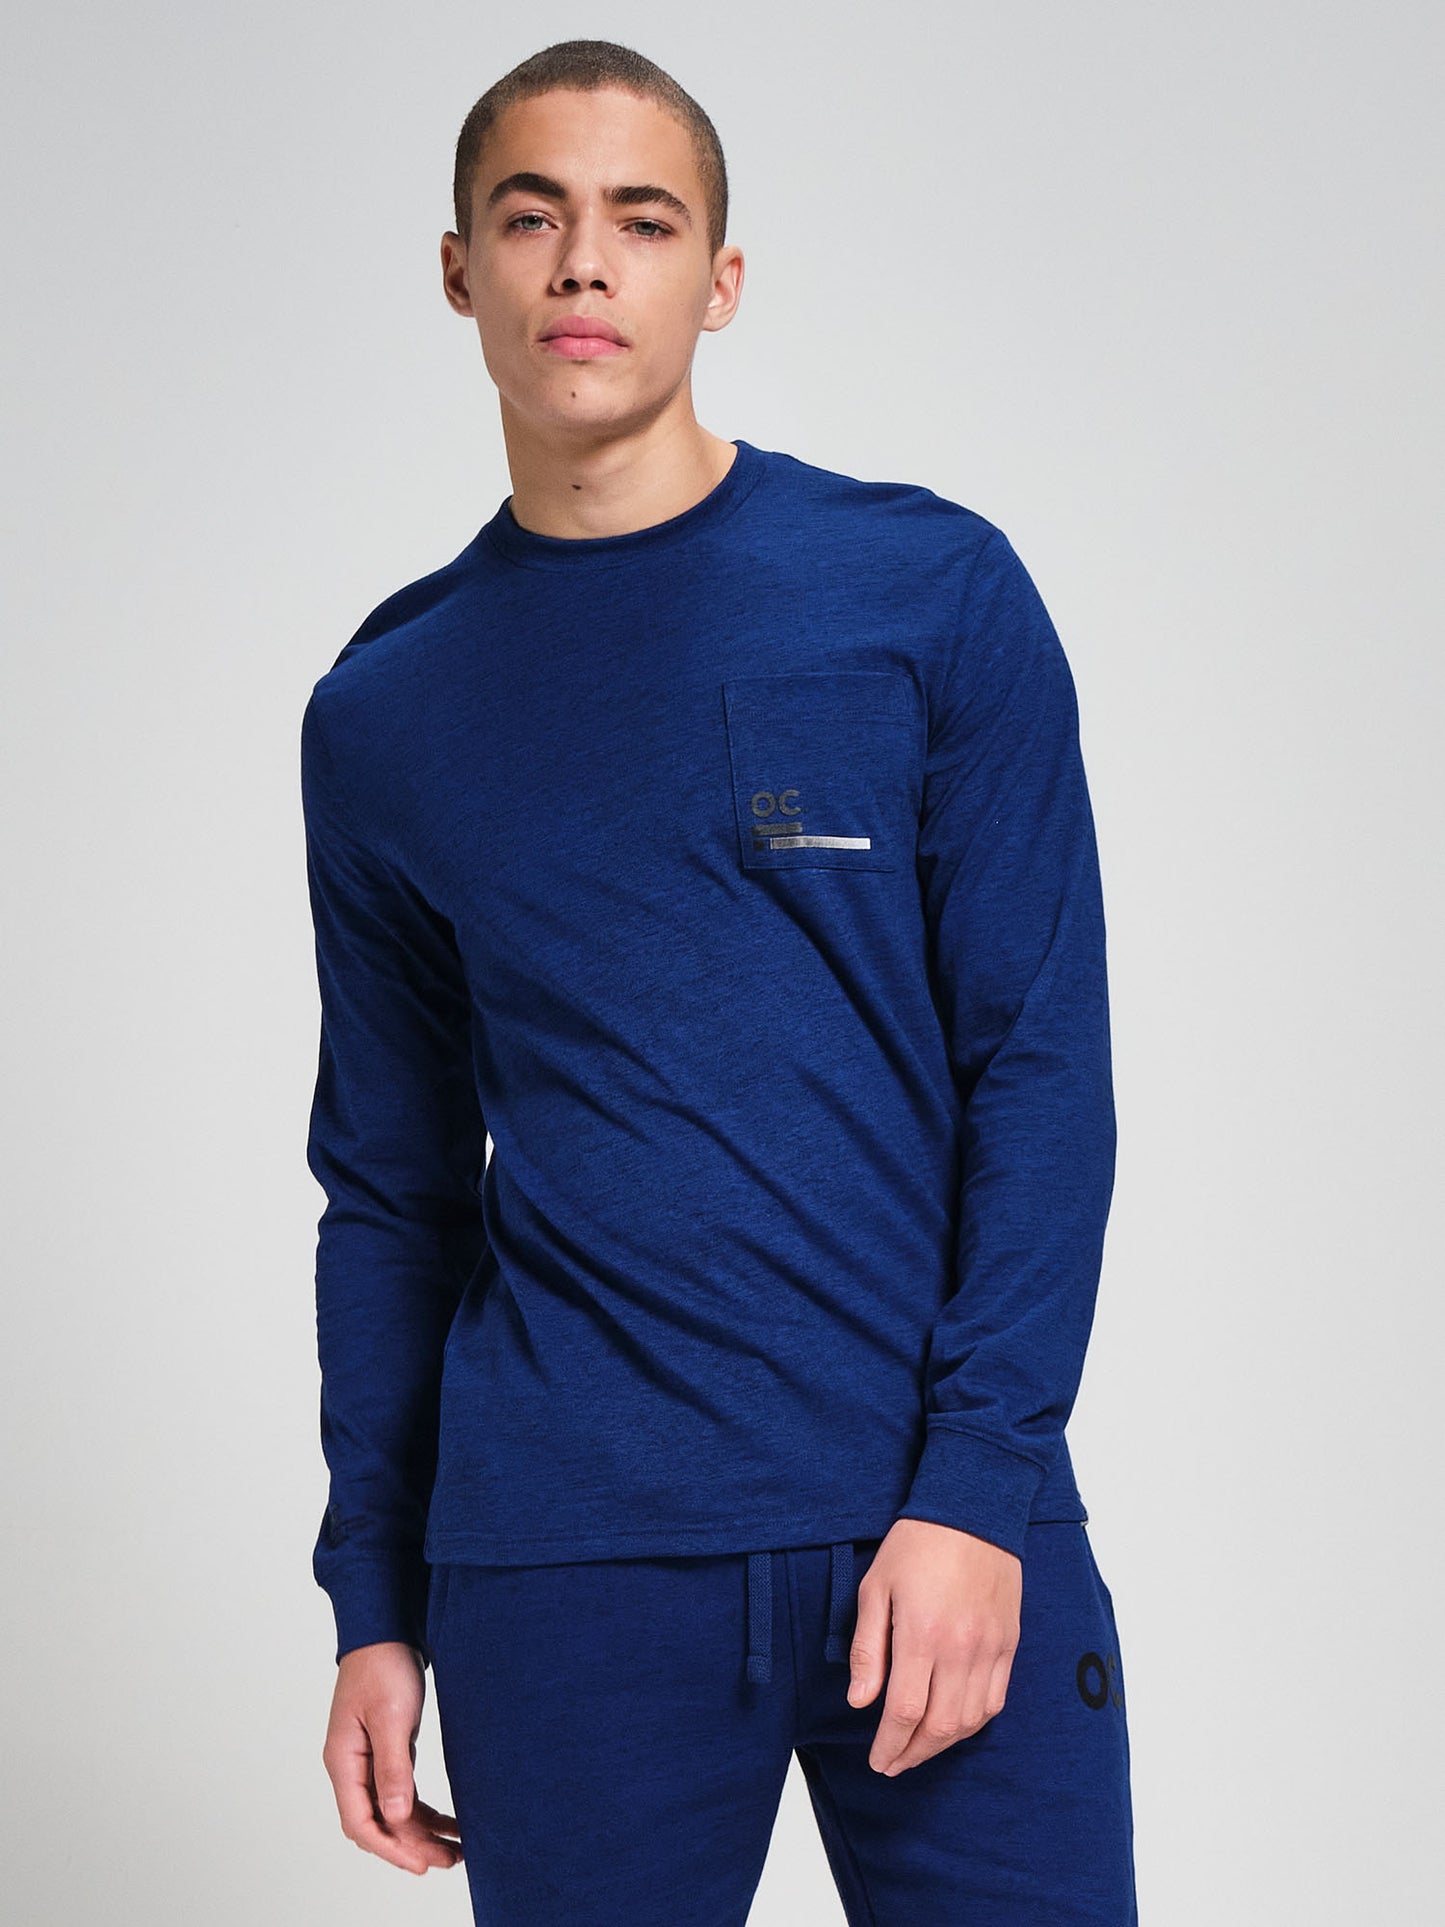 OC. Long Sleeve T-Shirt - Cobalt Blue